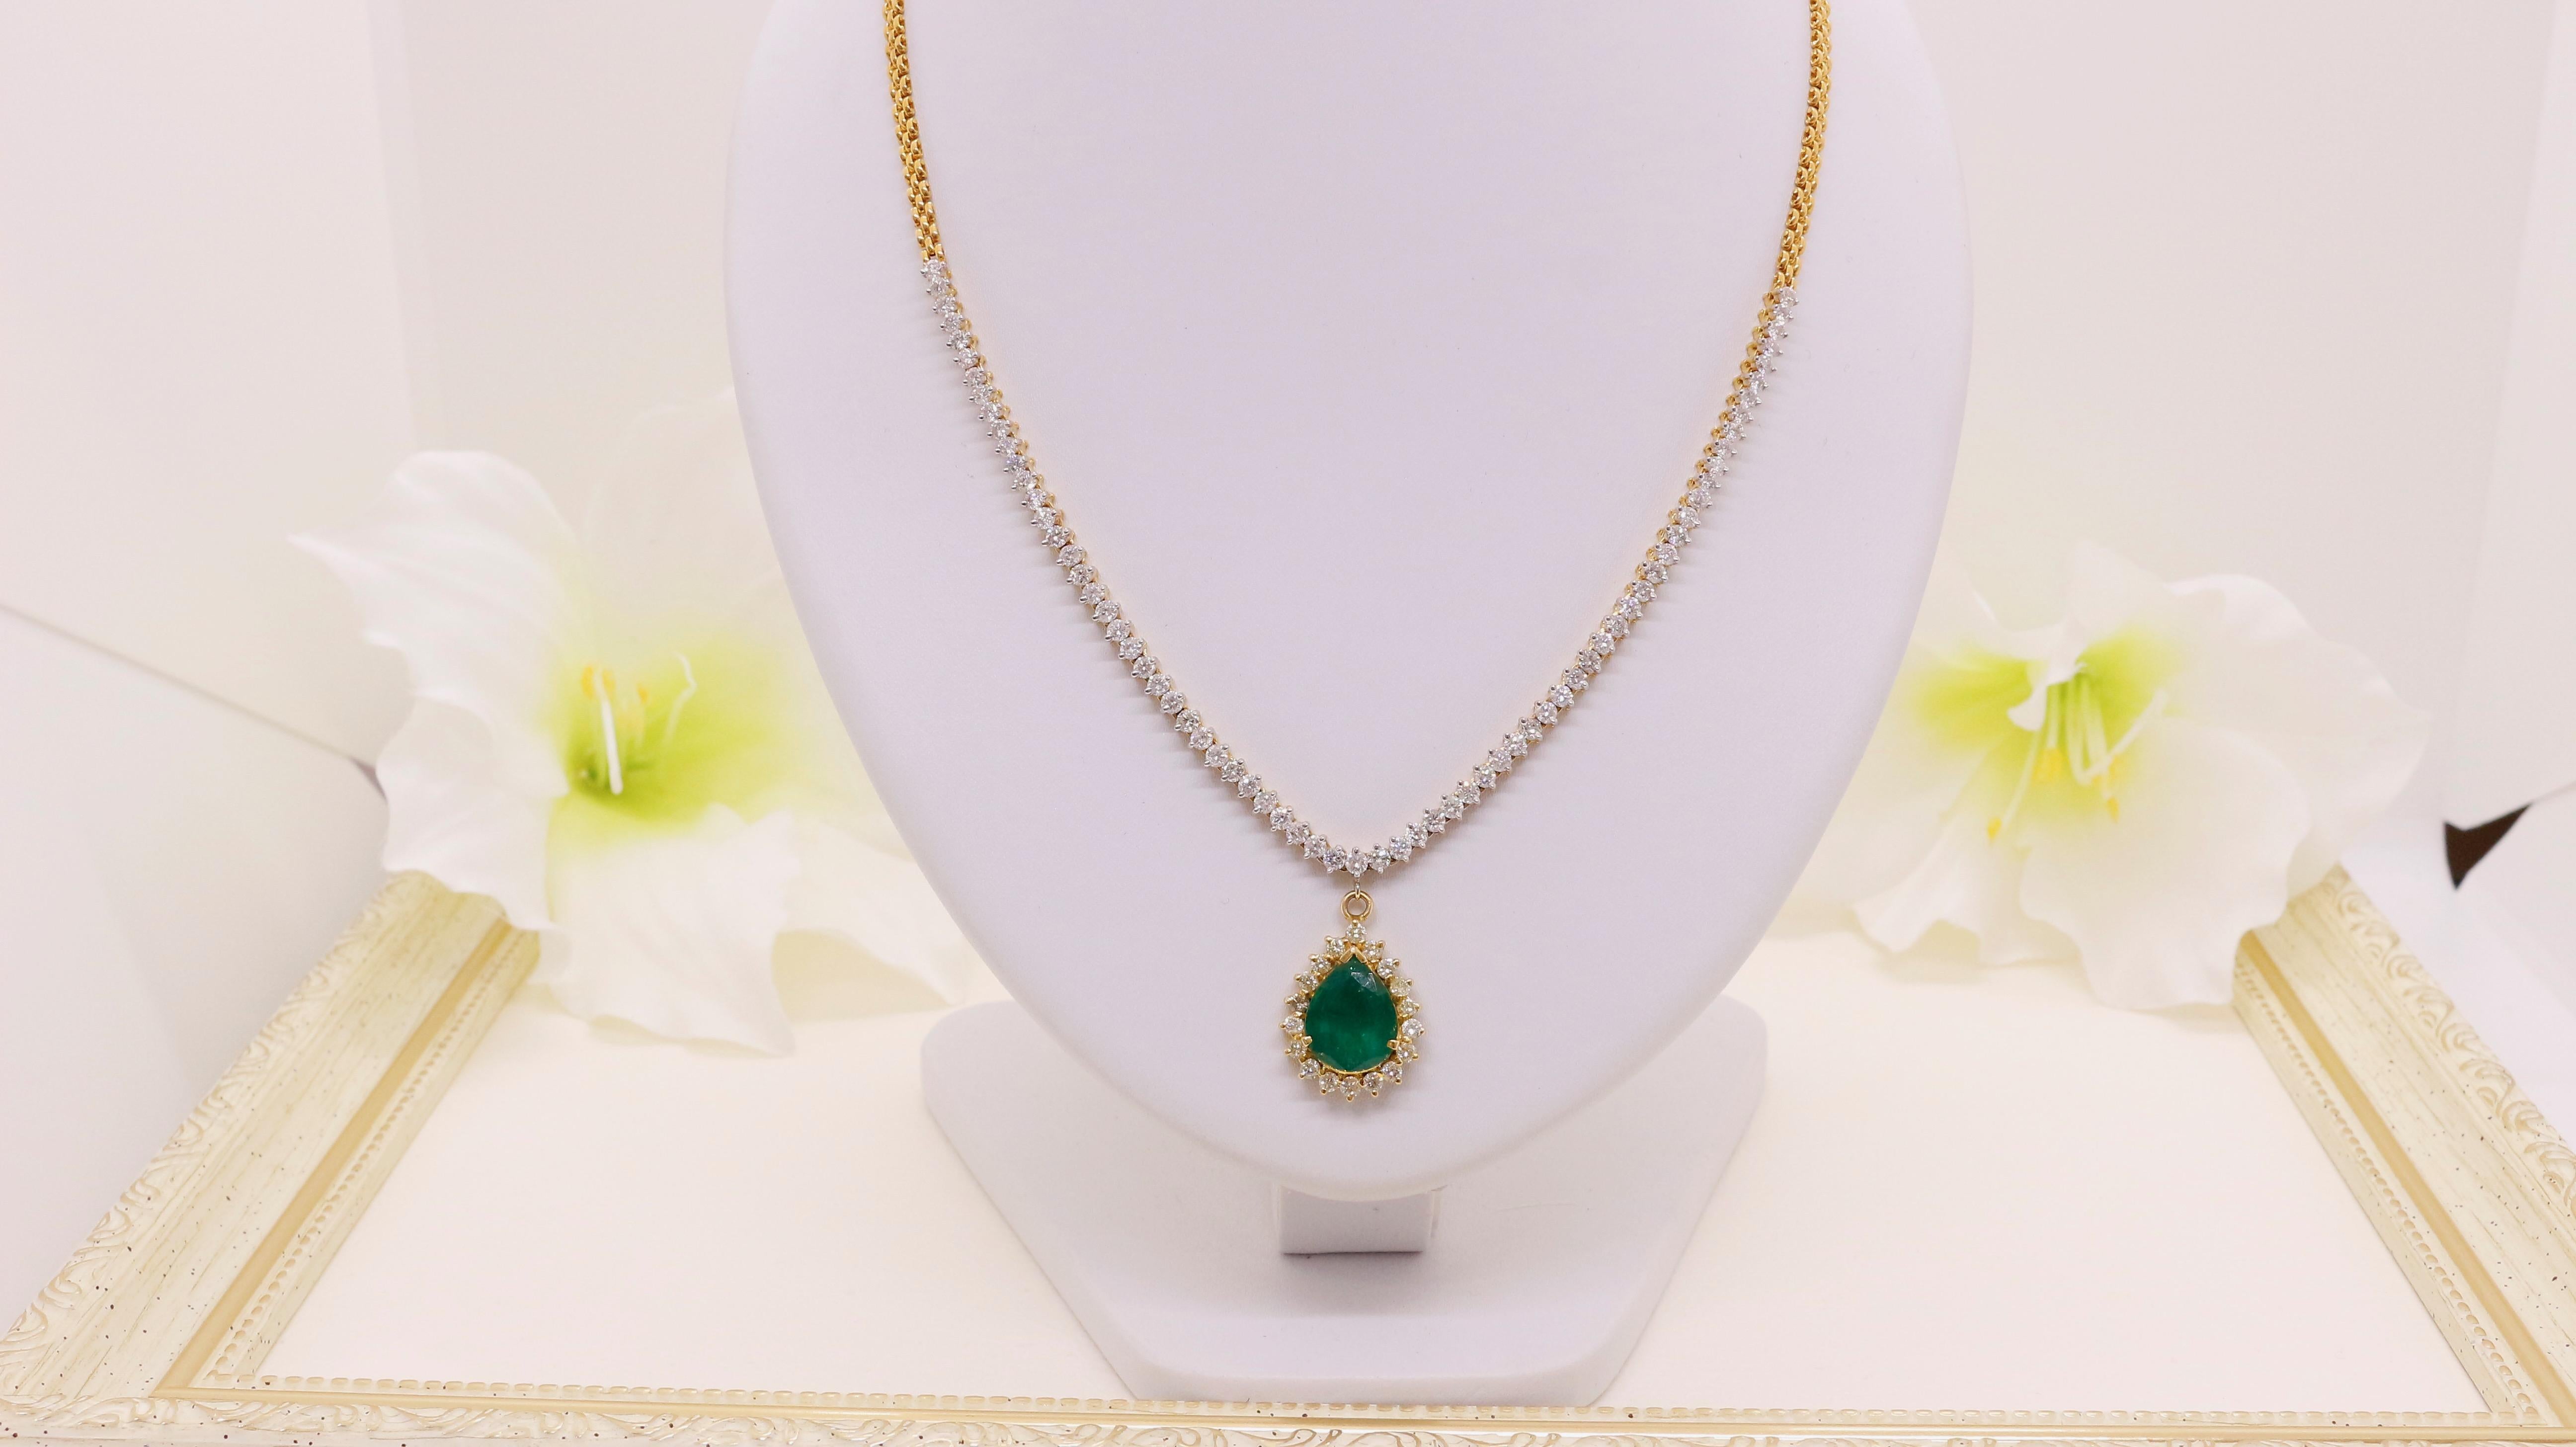 Wir präsentieren unsere exquisite tropfenförmige Smaragd- und Diamant-Halskette, die in Handarbeit aus 18-karätigem Gold gefertigt wurde. Als eines unserer meistverkauften Stücke ist diese Halskette eine wahre Verkörperung von Luxus und